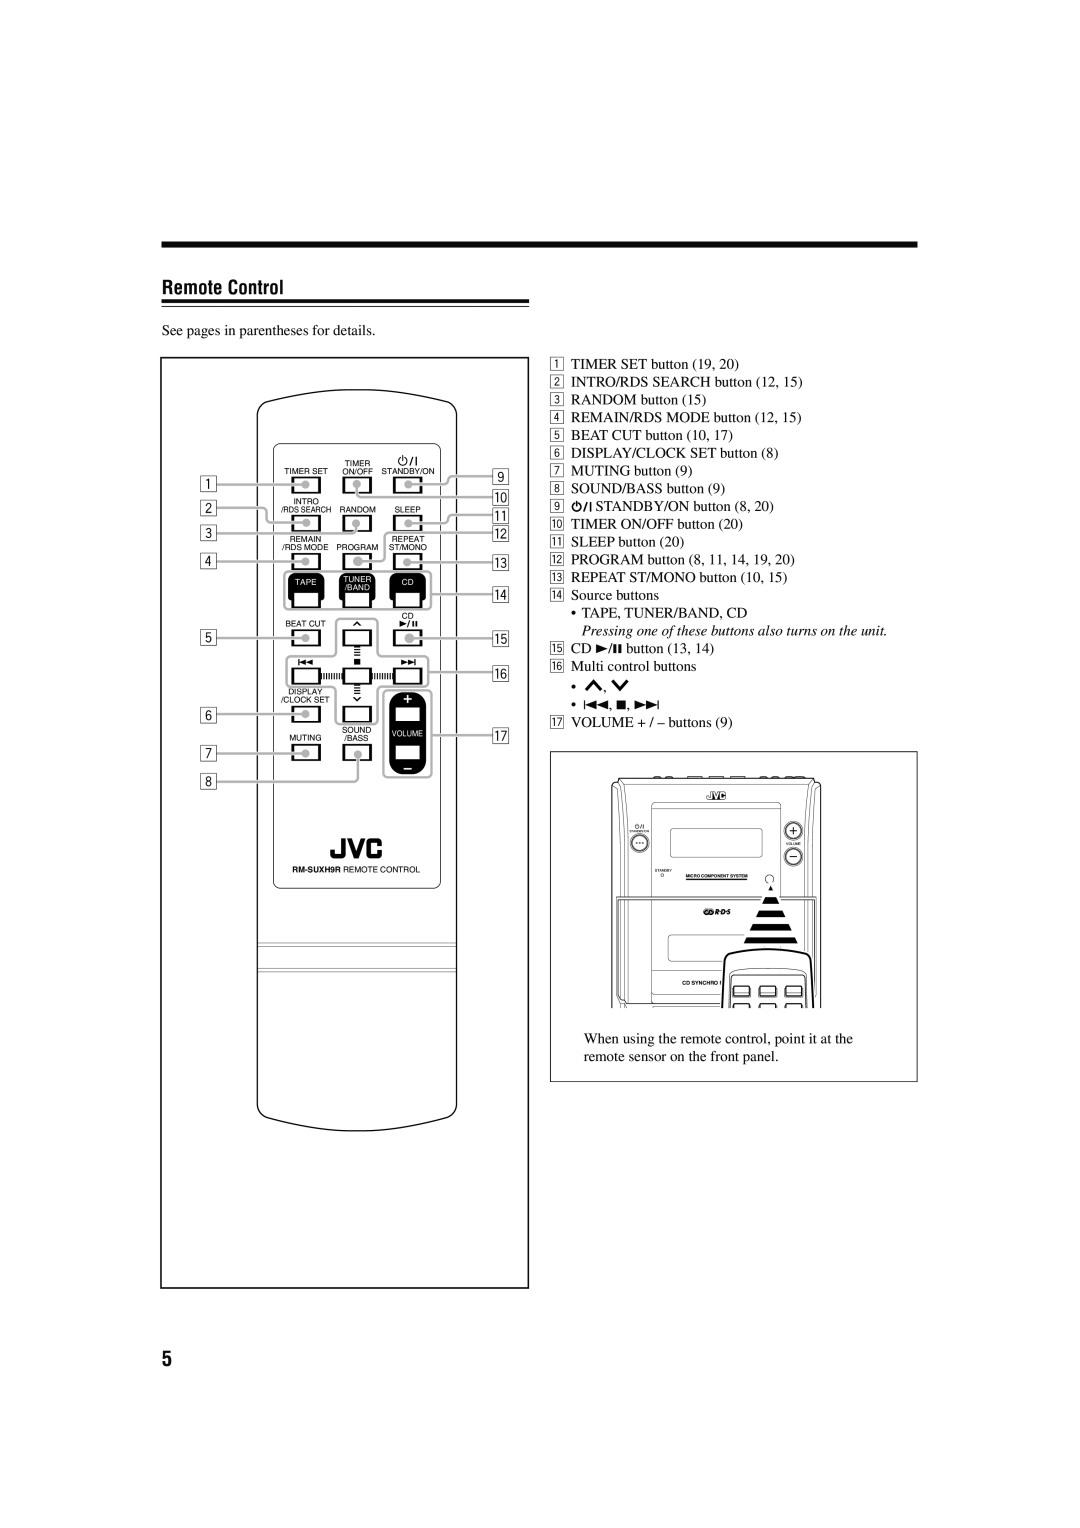 JVC LVT1115-003B, 0603MWMMDWORI manual Remote Control, 1 2 3 4 5 